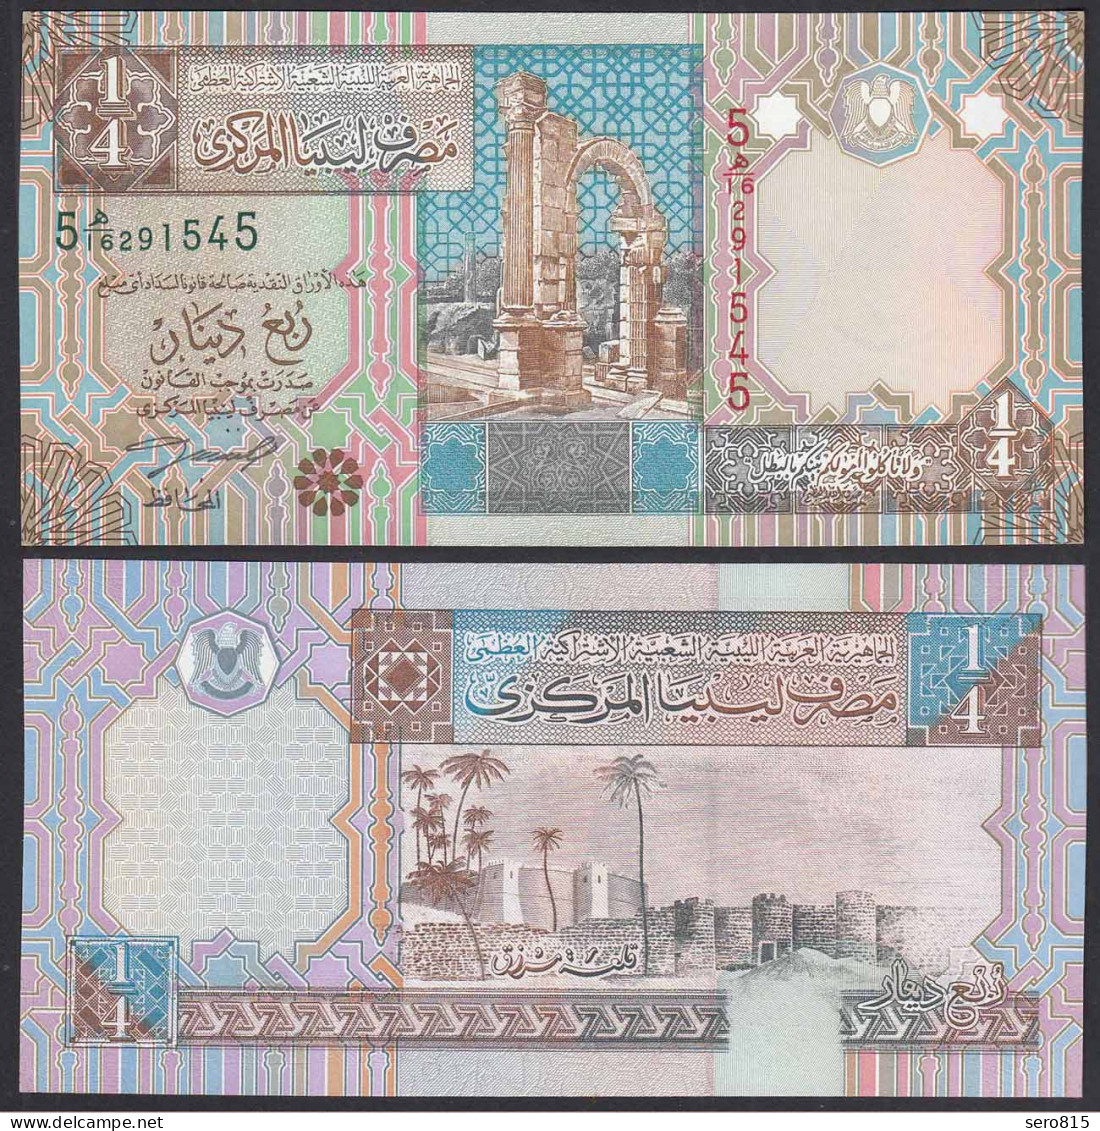 Libyen - LIBYA - 1/4 Dinar Banknote (2002) Pick 62 UNC (1)     (31870 - Autres - Afrique